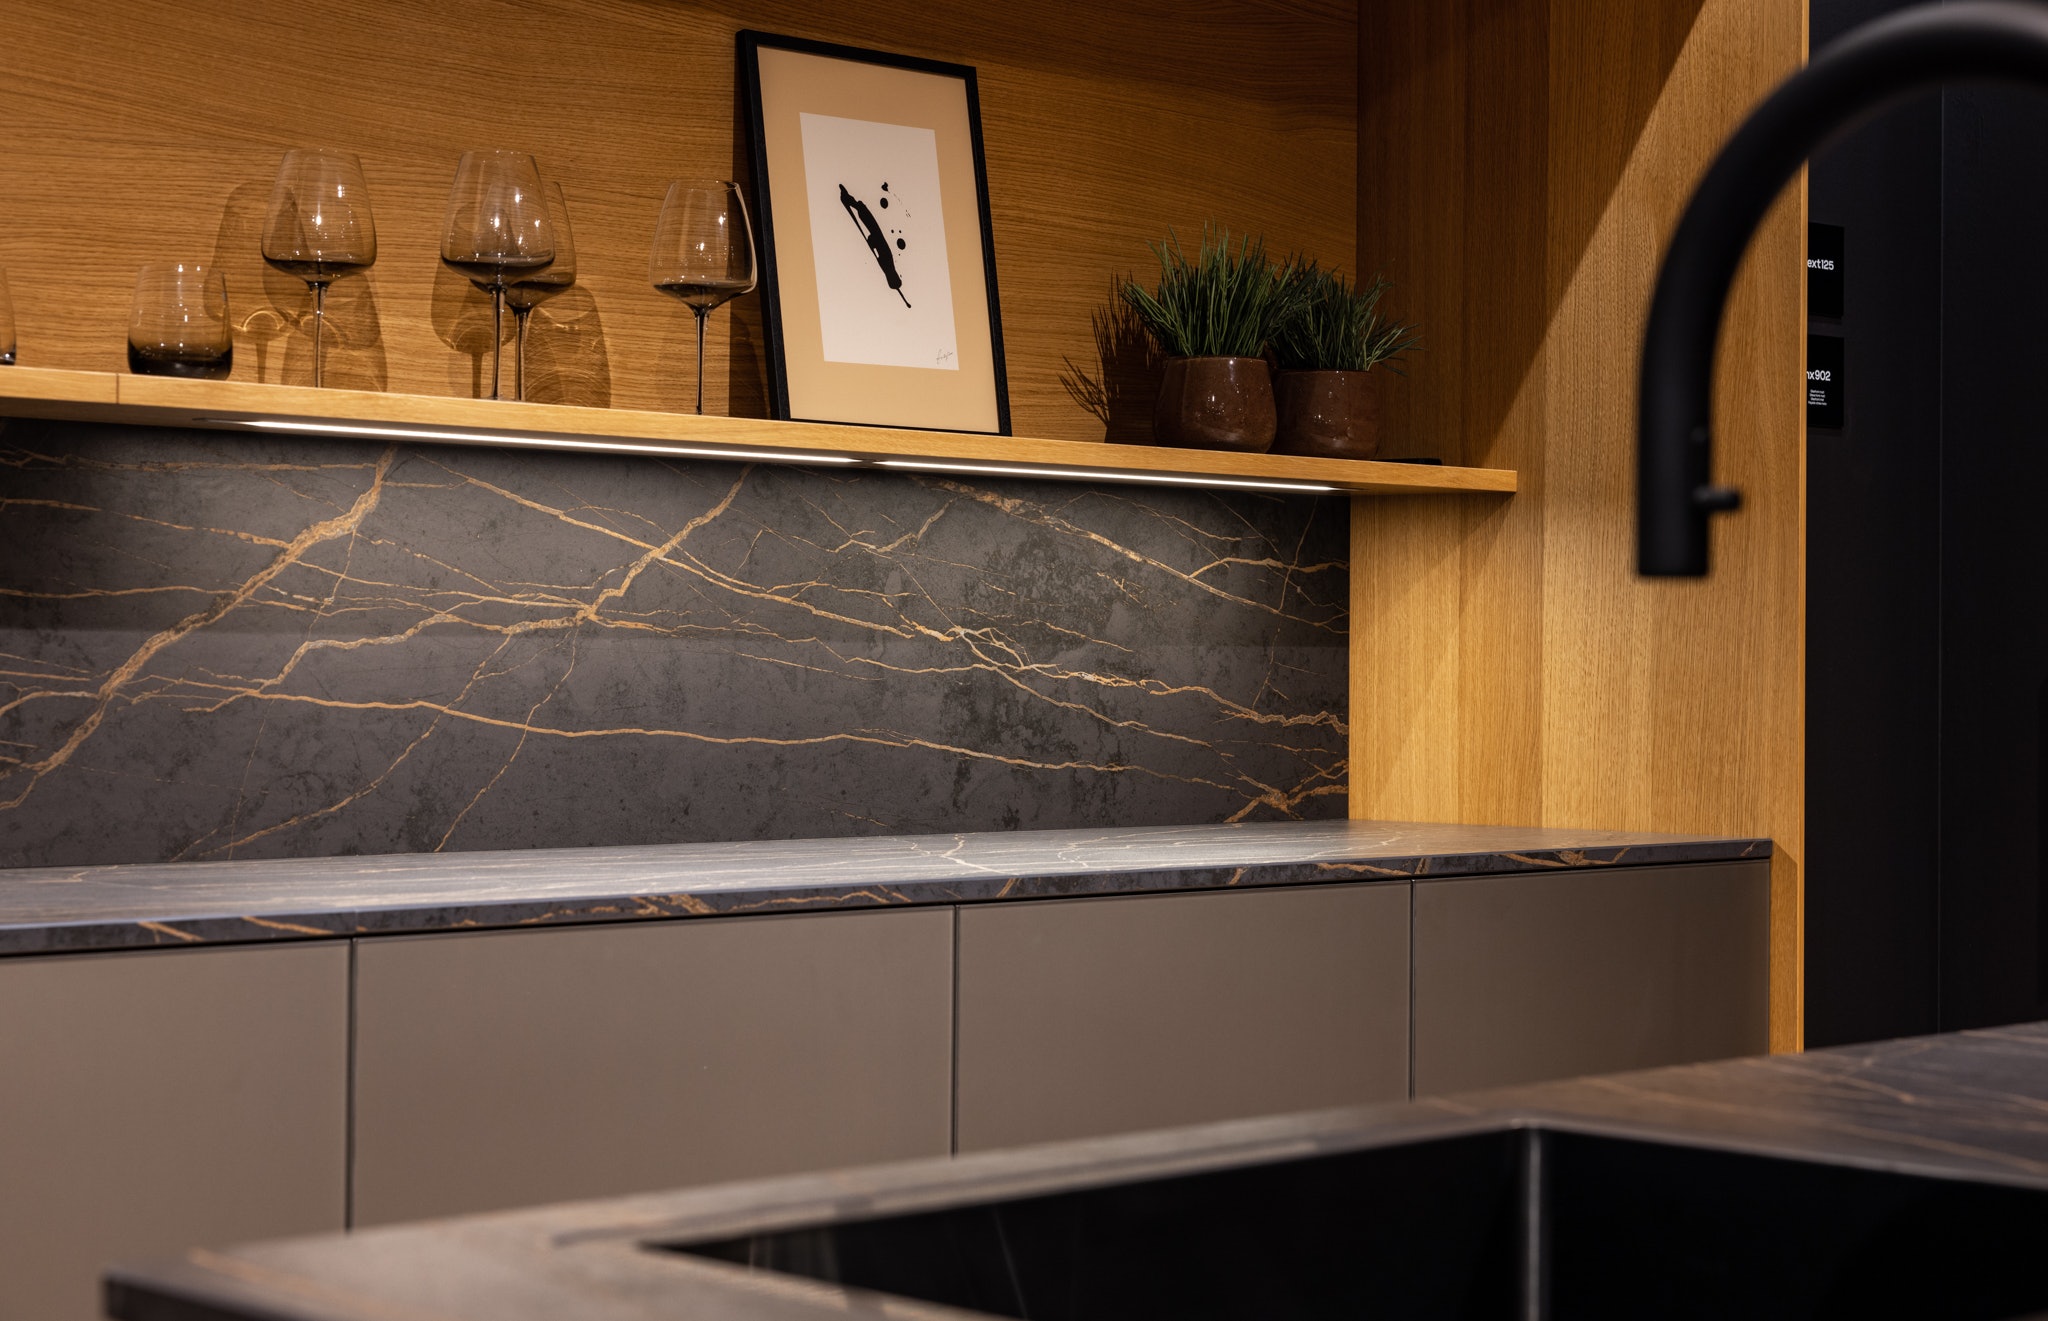 Koel, elegant glas, harde steen en warm hout komen in deze keuken samen als een eigenzinnig samengestelde outfit.